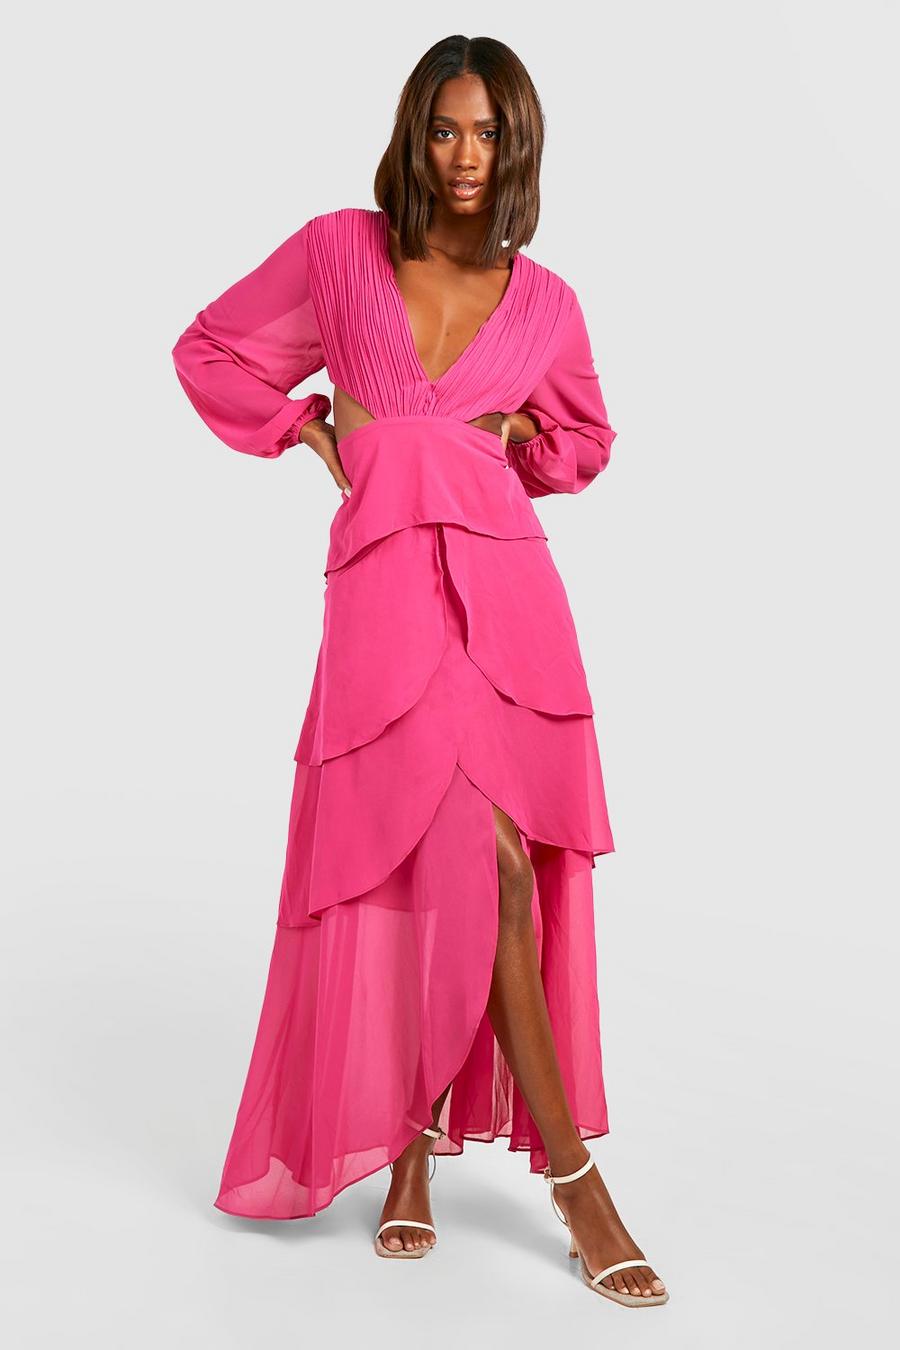 Bright pink Långklänning i chiffong med volanger och cut-out